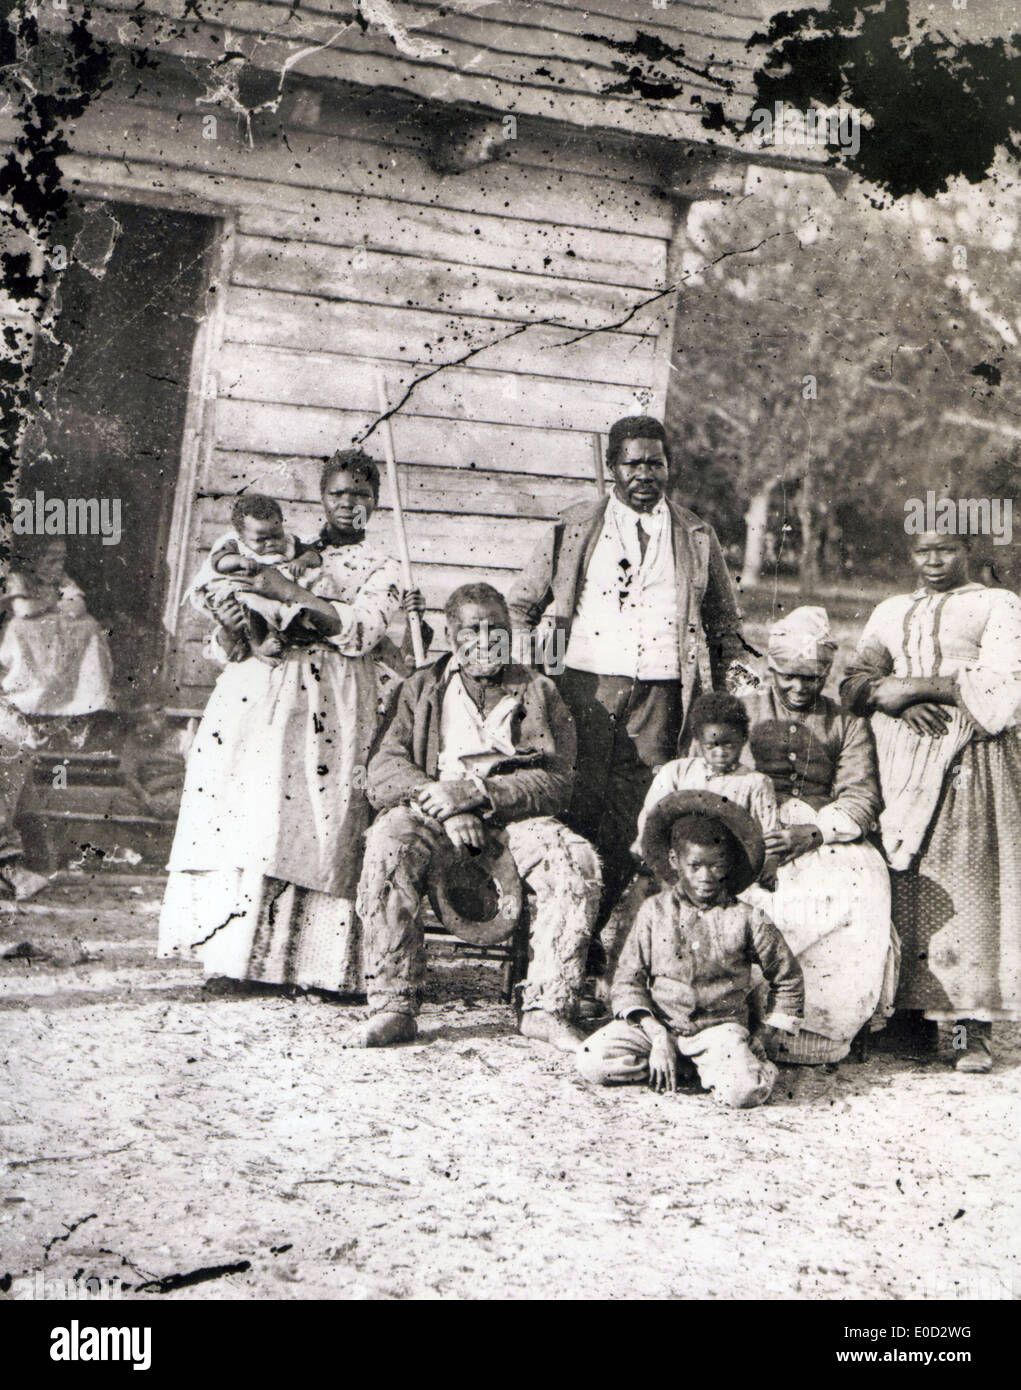 La schiavitù di cinque generazioni di una famiglia a Smiths Plantation, Beaufort,Carolina del Sud in 1862 - vedere la descrizione riportata di seguito Foto Stock